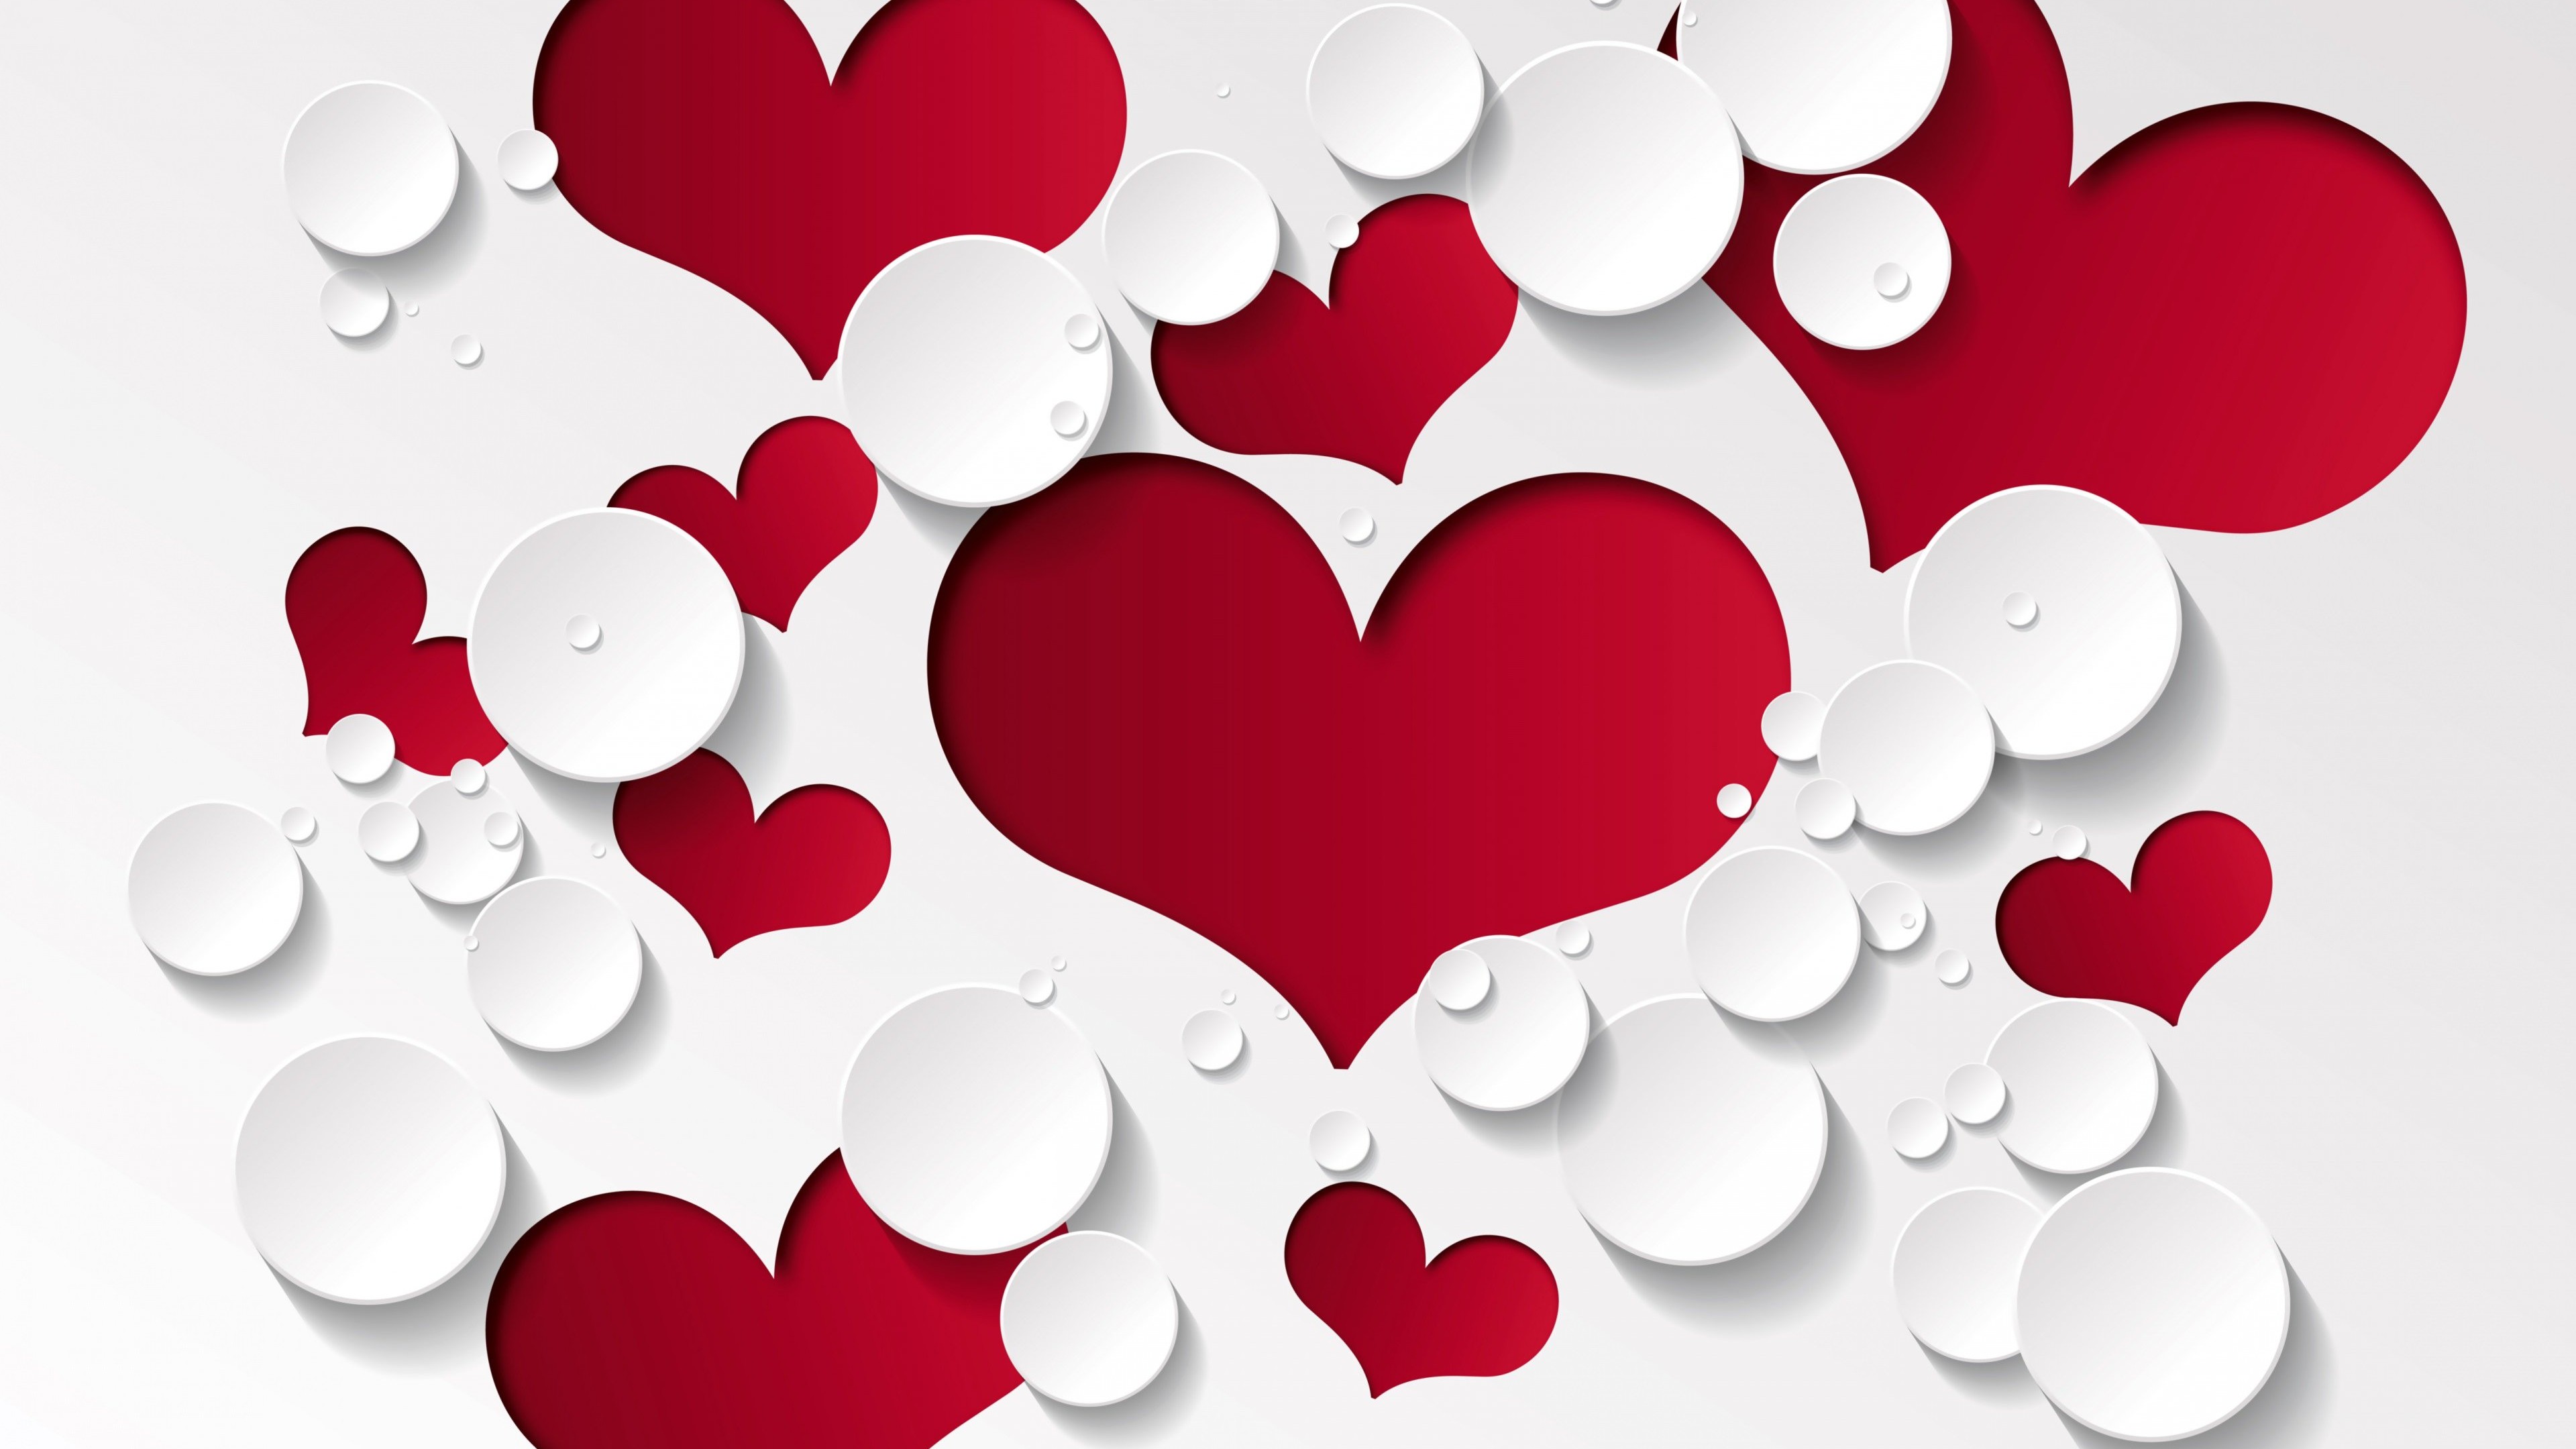 Love Heart Shaped Pattern Wallpaper for Desktop 4K 3840x2160